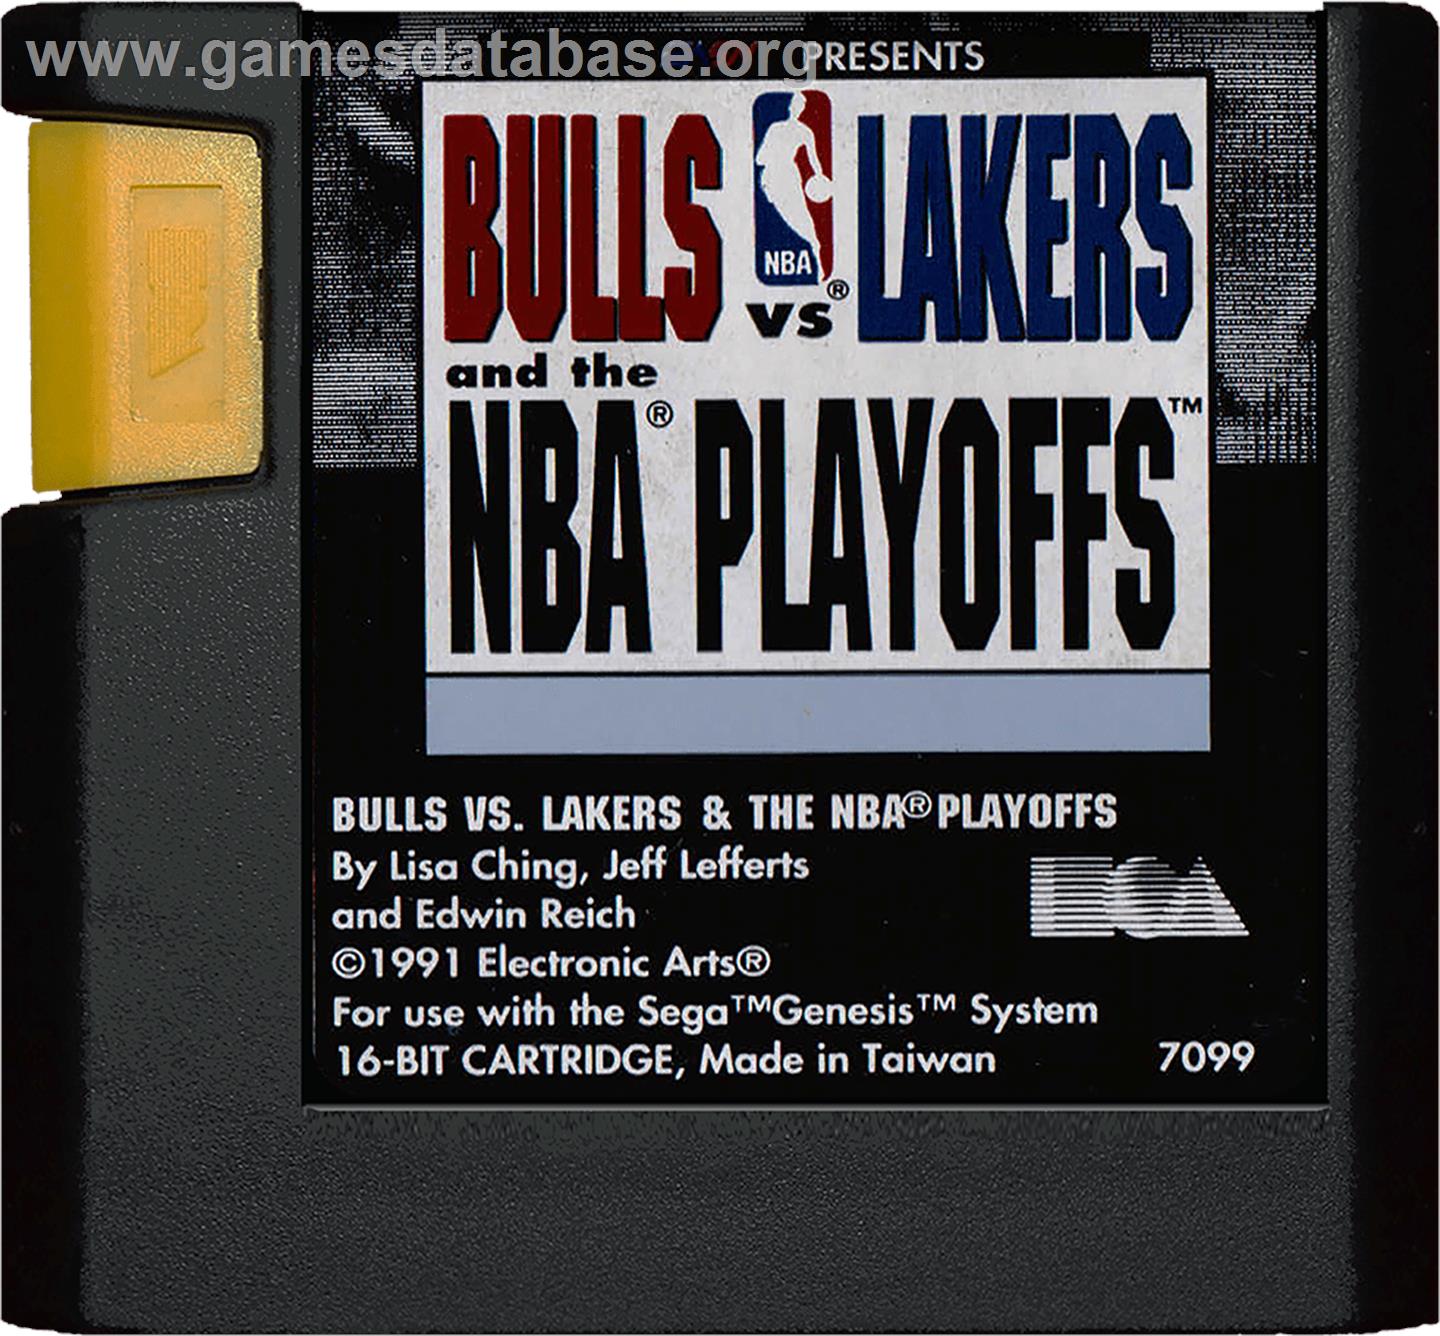 Bulls vs. Lakers and the NBA Playoffs - Sega Genesis - Artwork - Cartridge